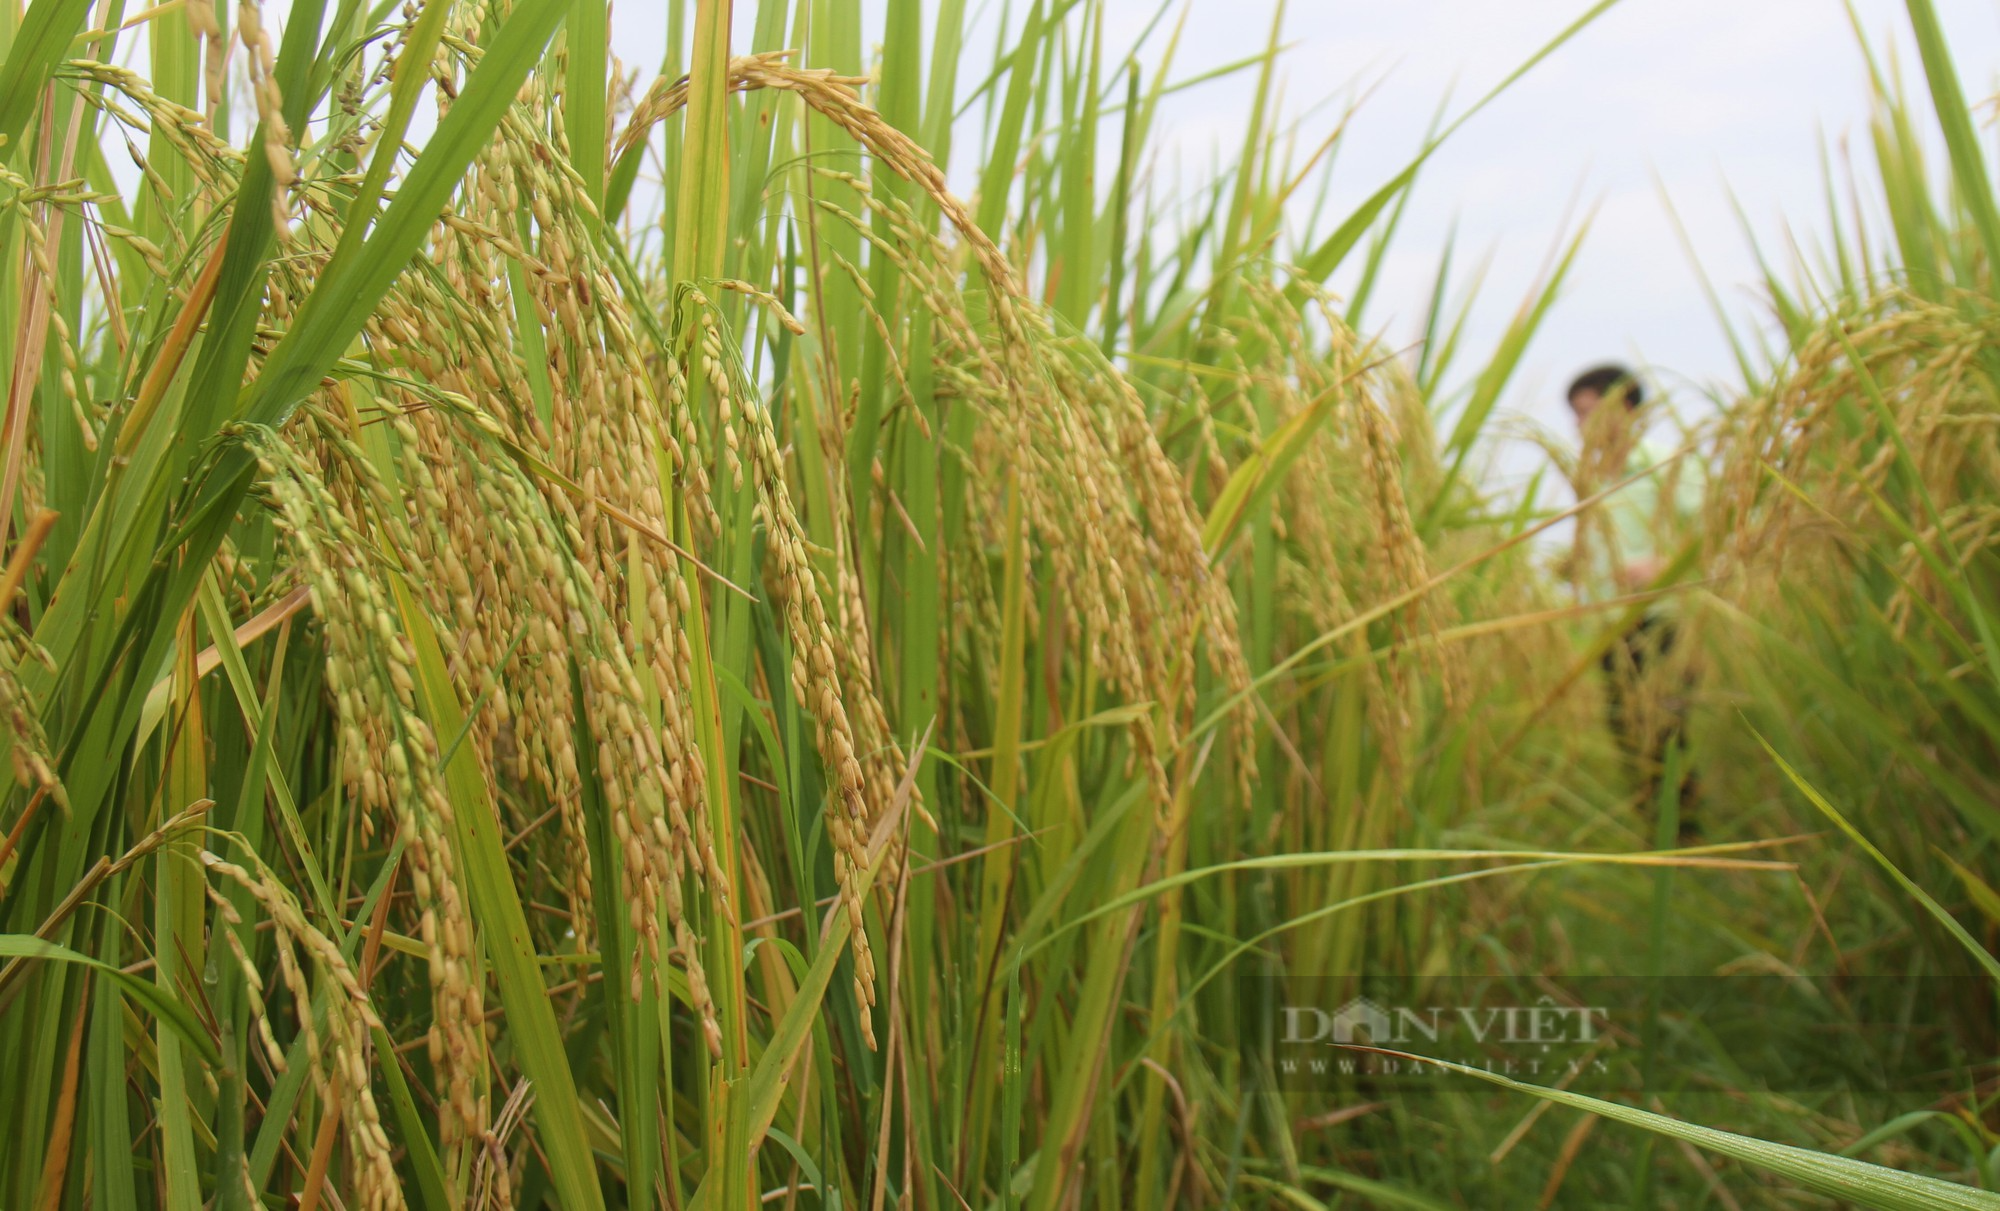 Bà con nông dân nơi này nô nức ra đồng ngắm những bông lúa TBR 87 dài, to, nặng trĩu của ThaiBinh Seed - Ảnh 9.